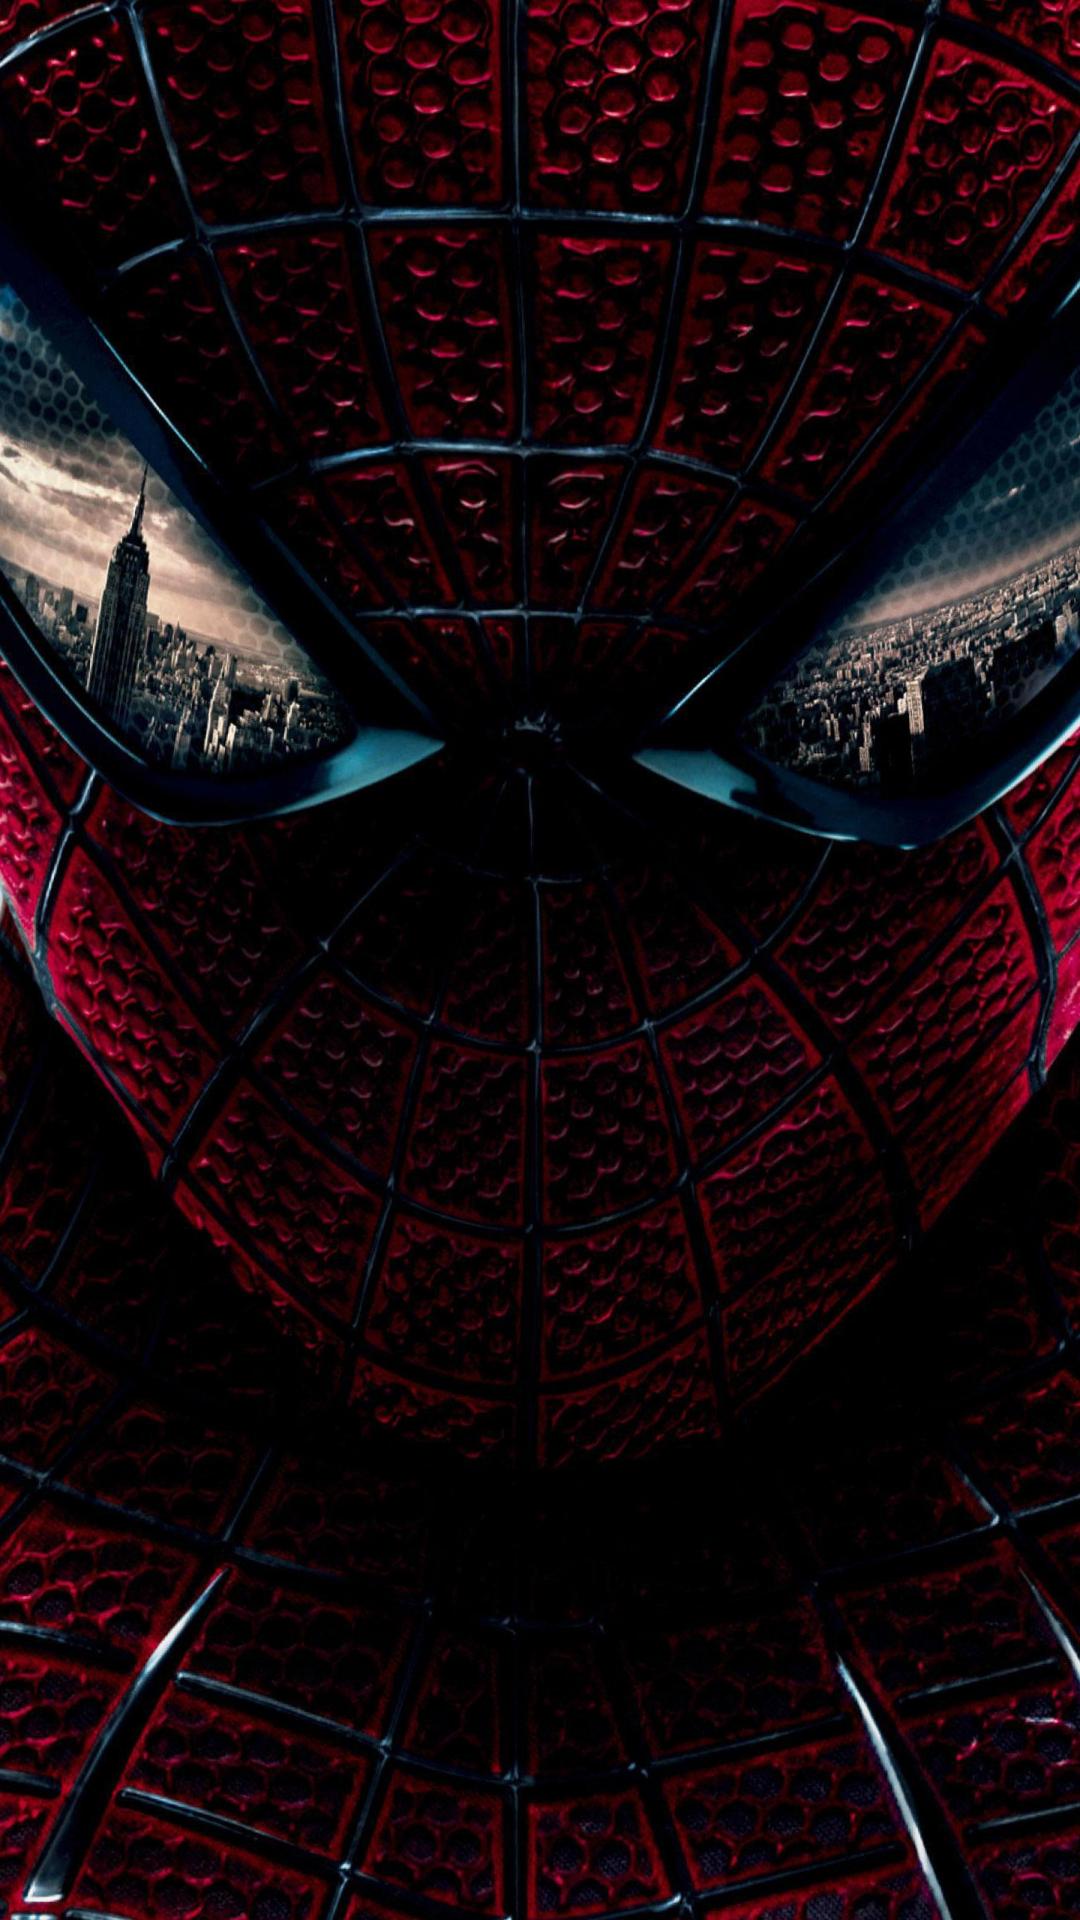 fond d'écran cool spiderman,rouge,lumière,personnage fictif,homme chauve souris,super héros